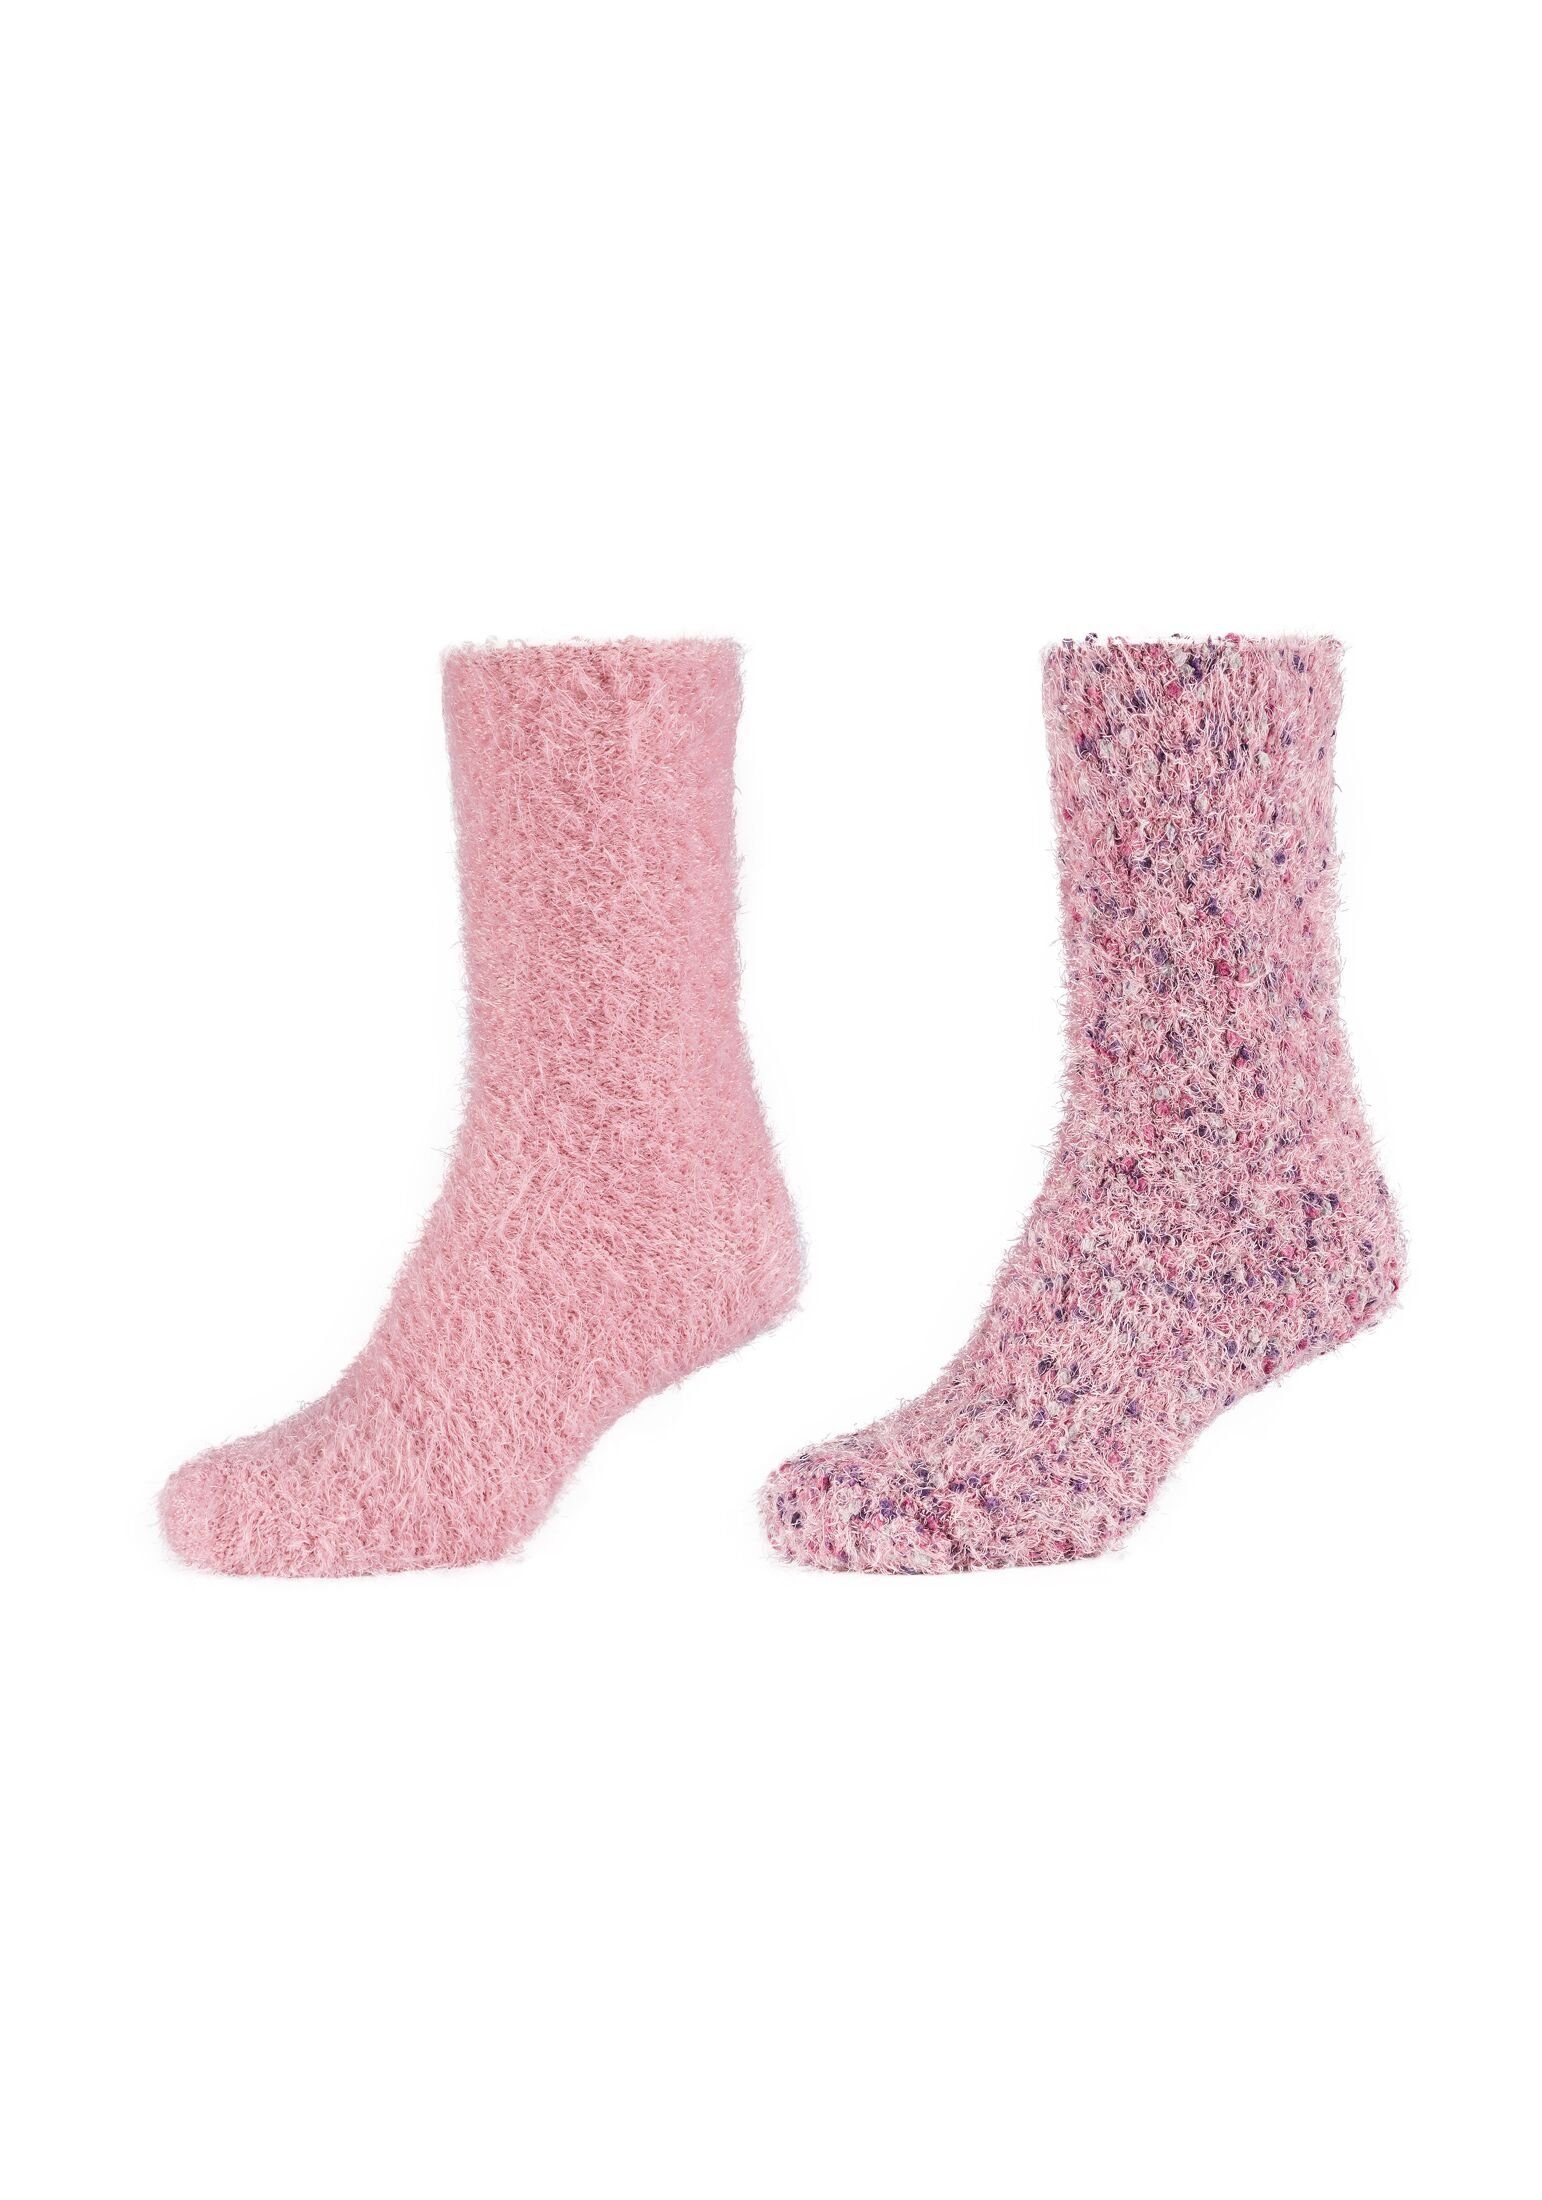 Socken Camano dusty rose 4er Pack Socken